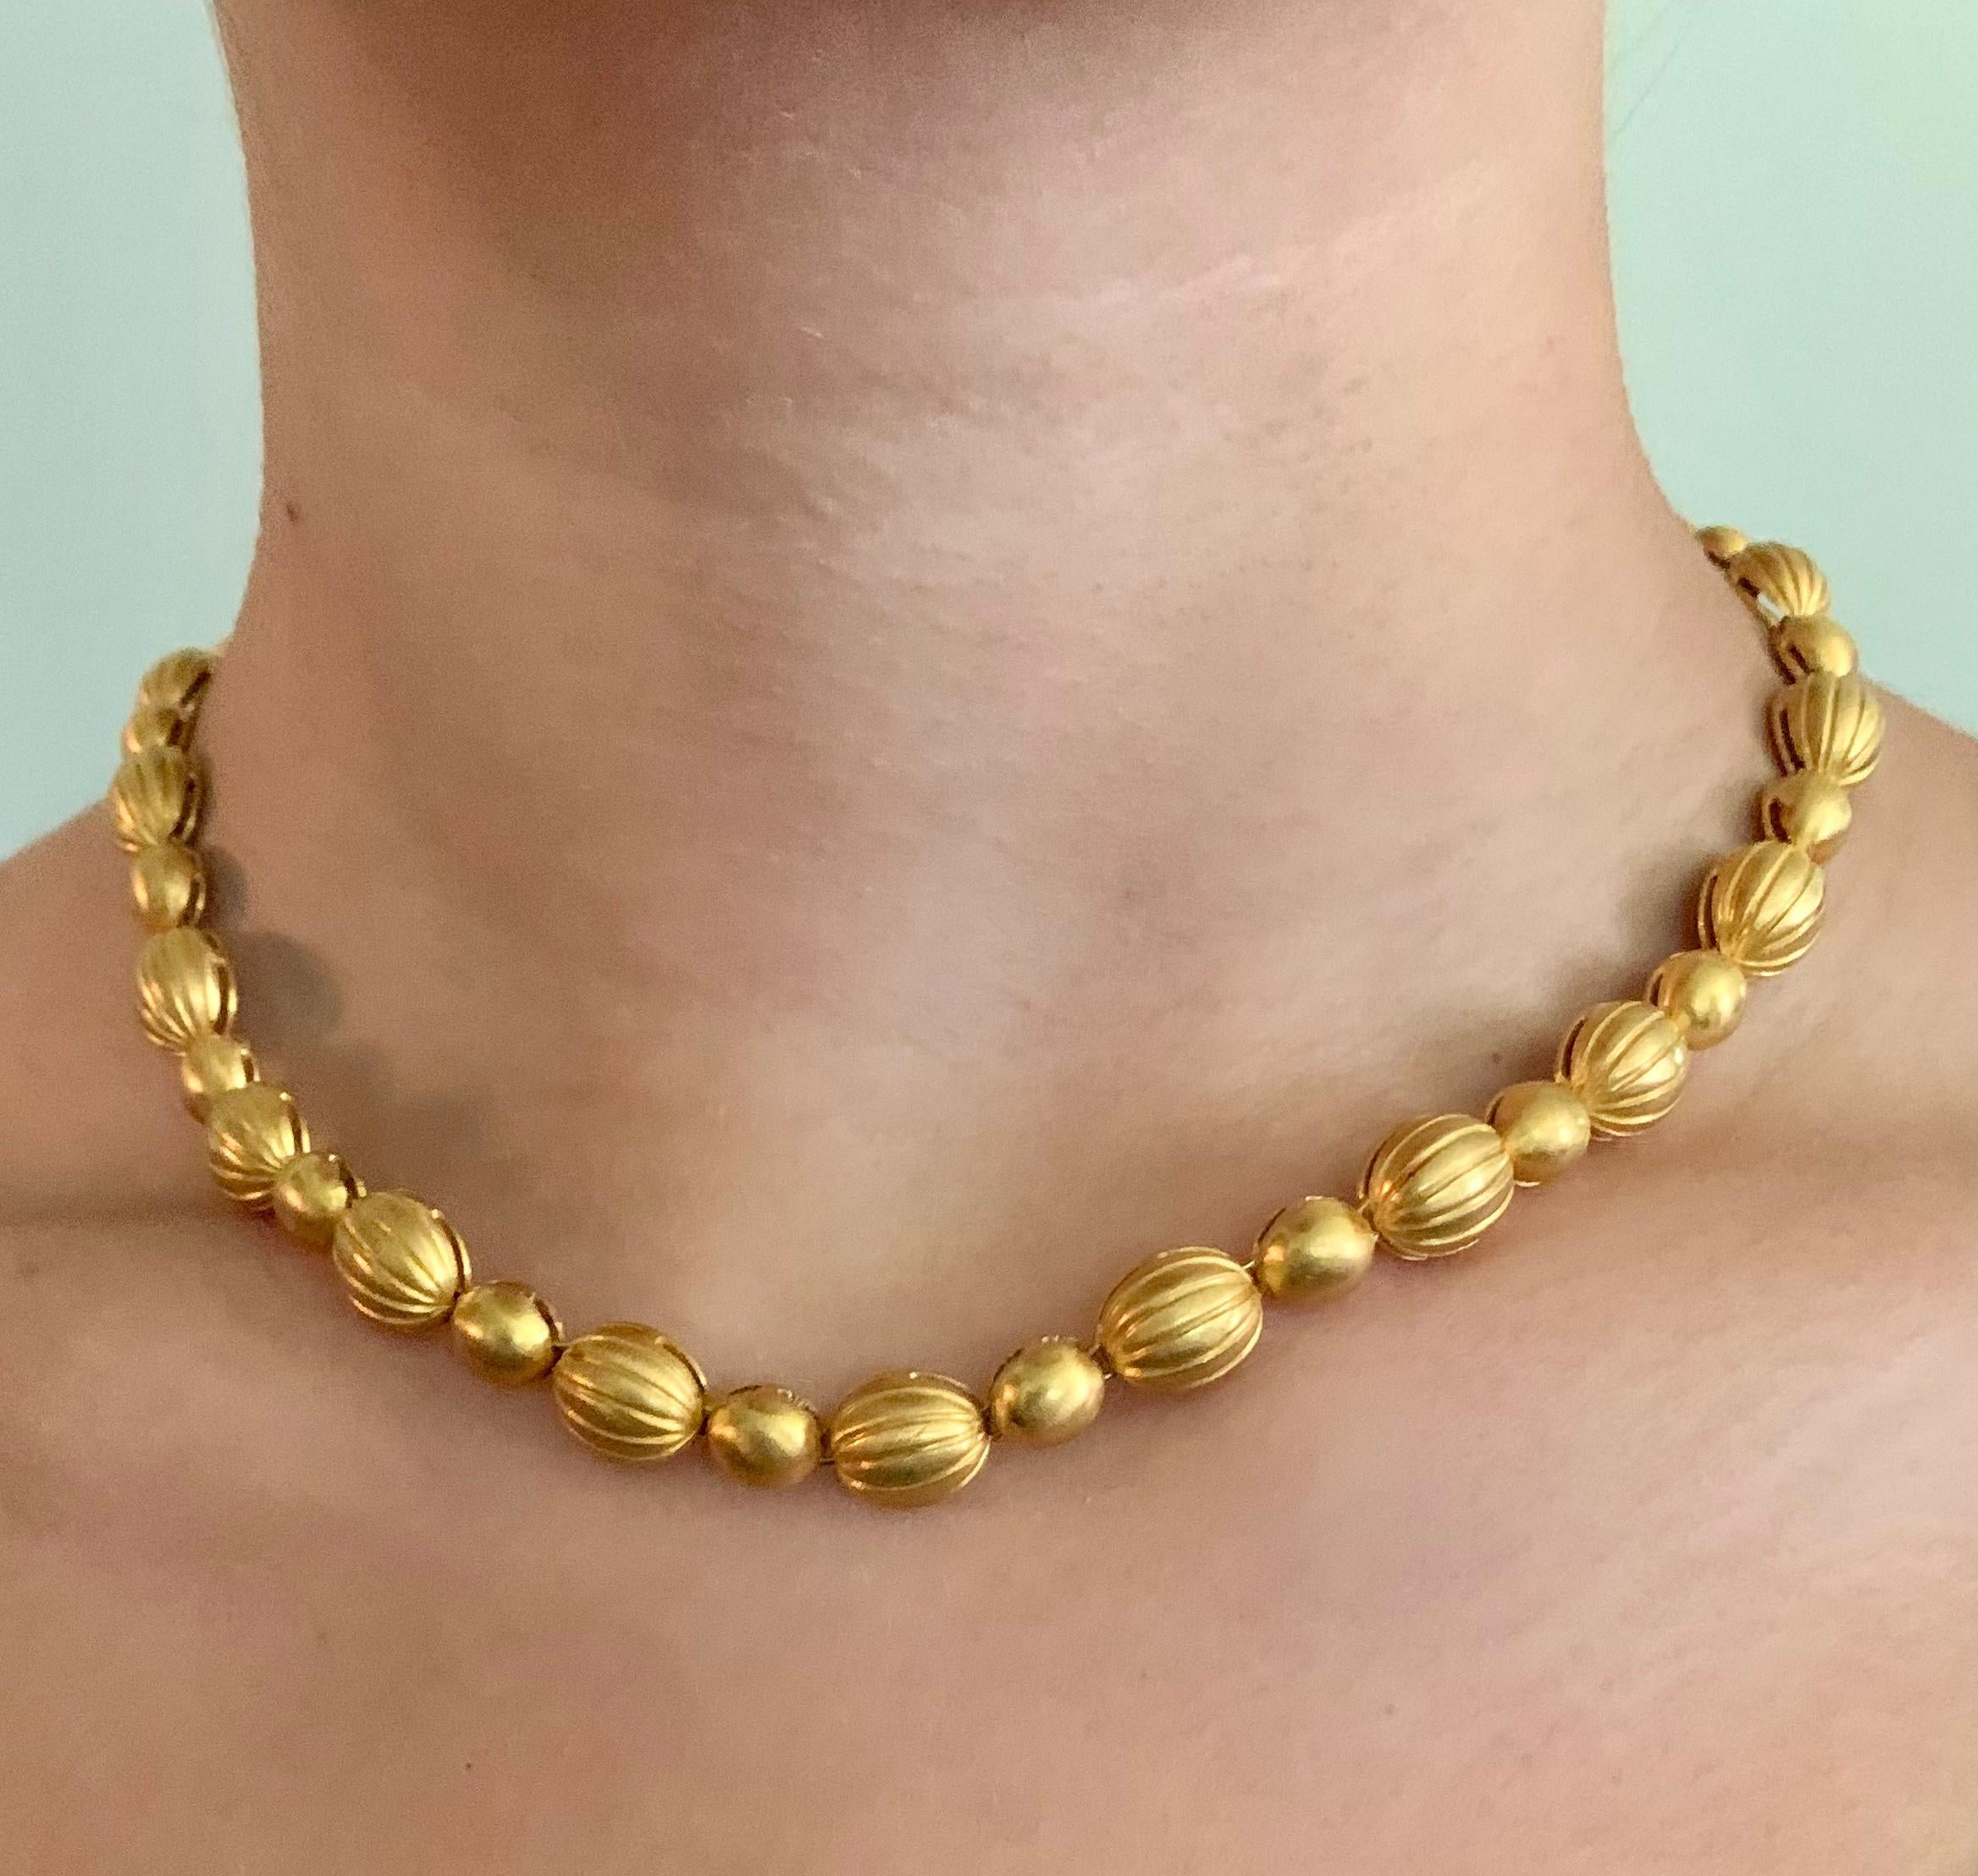 Kräftige, schwere europäische Halskette aus 18 Karat Gelbgold im byzantinischen Stil mit transformierbarem Kreuzdesign. 
Diese Halskette wurde so konzipiert, dass sie auf zwei Arten getragen werden kann: Auf der einen Seite befinden sich ovale,